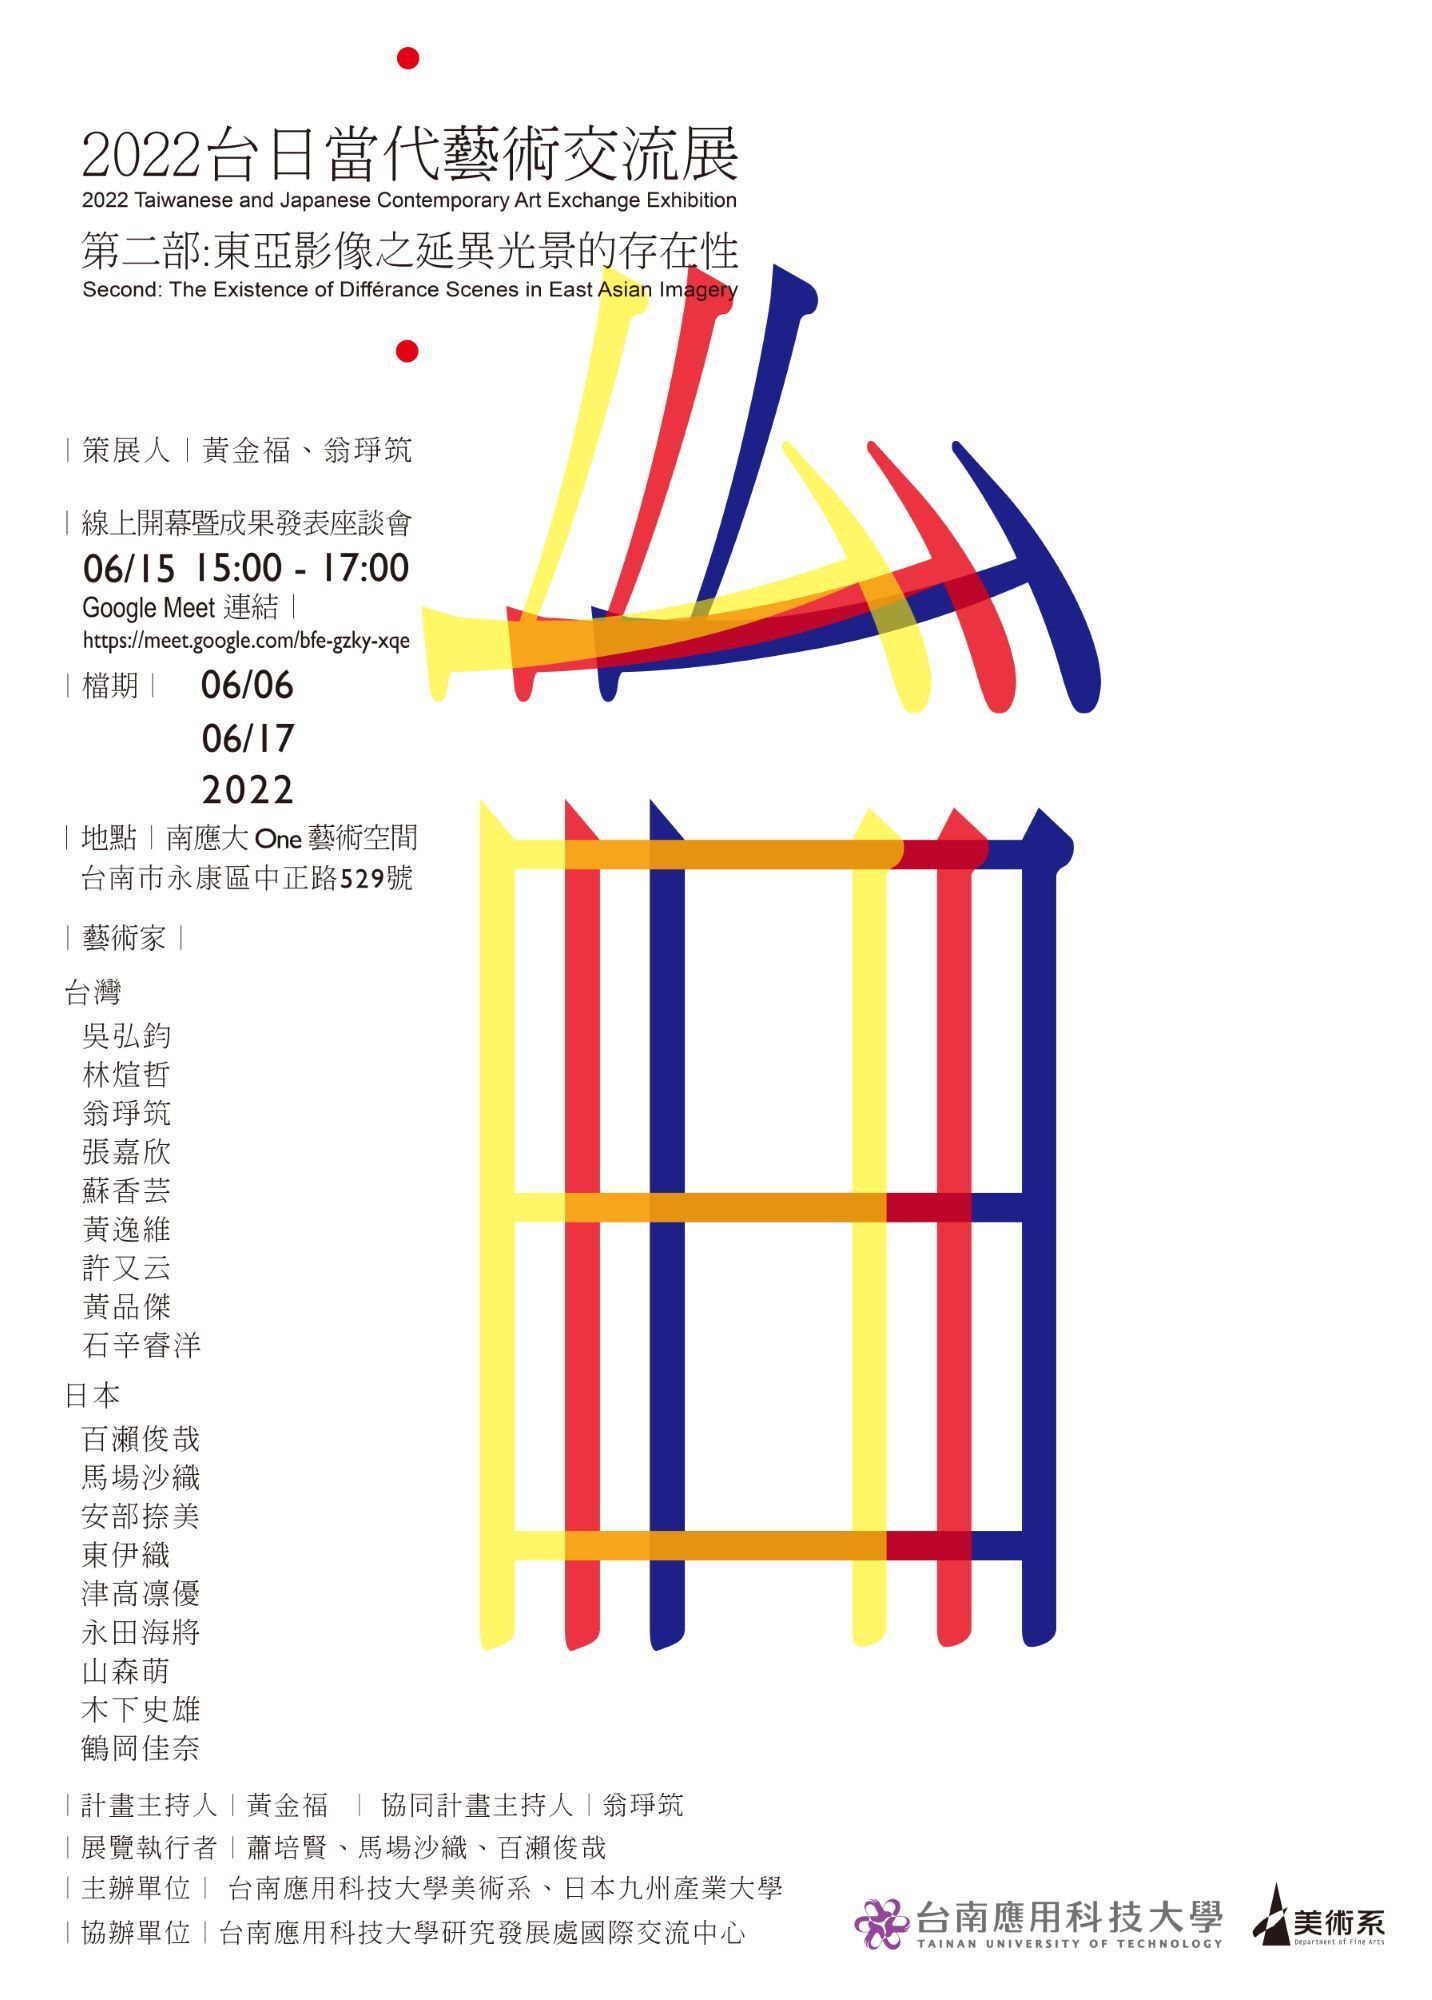  「2022台日當代藝術交流展-第二部:東亞影像之延異光景的存在性」 2022 Taiwanese and Japanese Contemporary Art Exchange Exhibition 第二部:東亞影像之延異光景的存在性2022台日當代藝術交流展 Second: The Existence of Différance Scenes in East Asian Imagery   ︱時間︱ 2022/6/6~6/17 ︱地點︱ 台南應用科技大學美術系One藝術空間 ︱線上開幕暨成果發表座談會︱ 2022/6/15 (三) 3:00-4:00  Google Meet 連結︱https://meet.google.com/bfe-gzky-xqe ︱策展人︱黃金福、翁琤筑 ︱台灣藝術家︱ 吳弘鈞 林煊哲 翁琤筑 張嘉欣  蘇香芸 黃逸維 許又云 黃品傑 石辛睿洋 ︱日本藝術家︱ 百瀨俊哉 馬場沙織 安部捺美 東伊織　 津高凛優 永田海將 山森萌  木下史雄 鶴岡佳奈